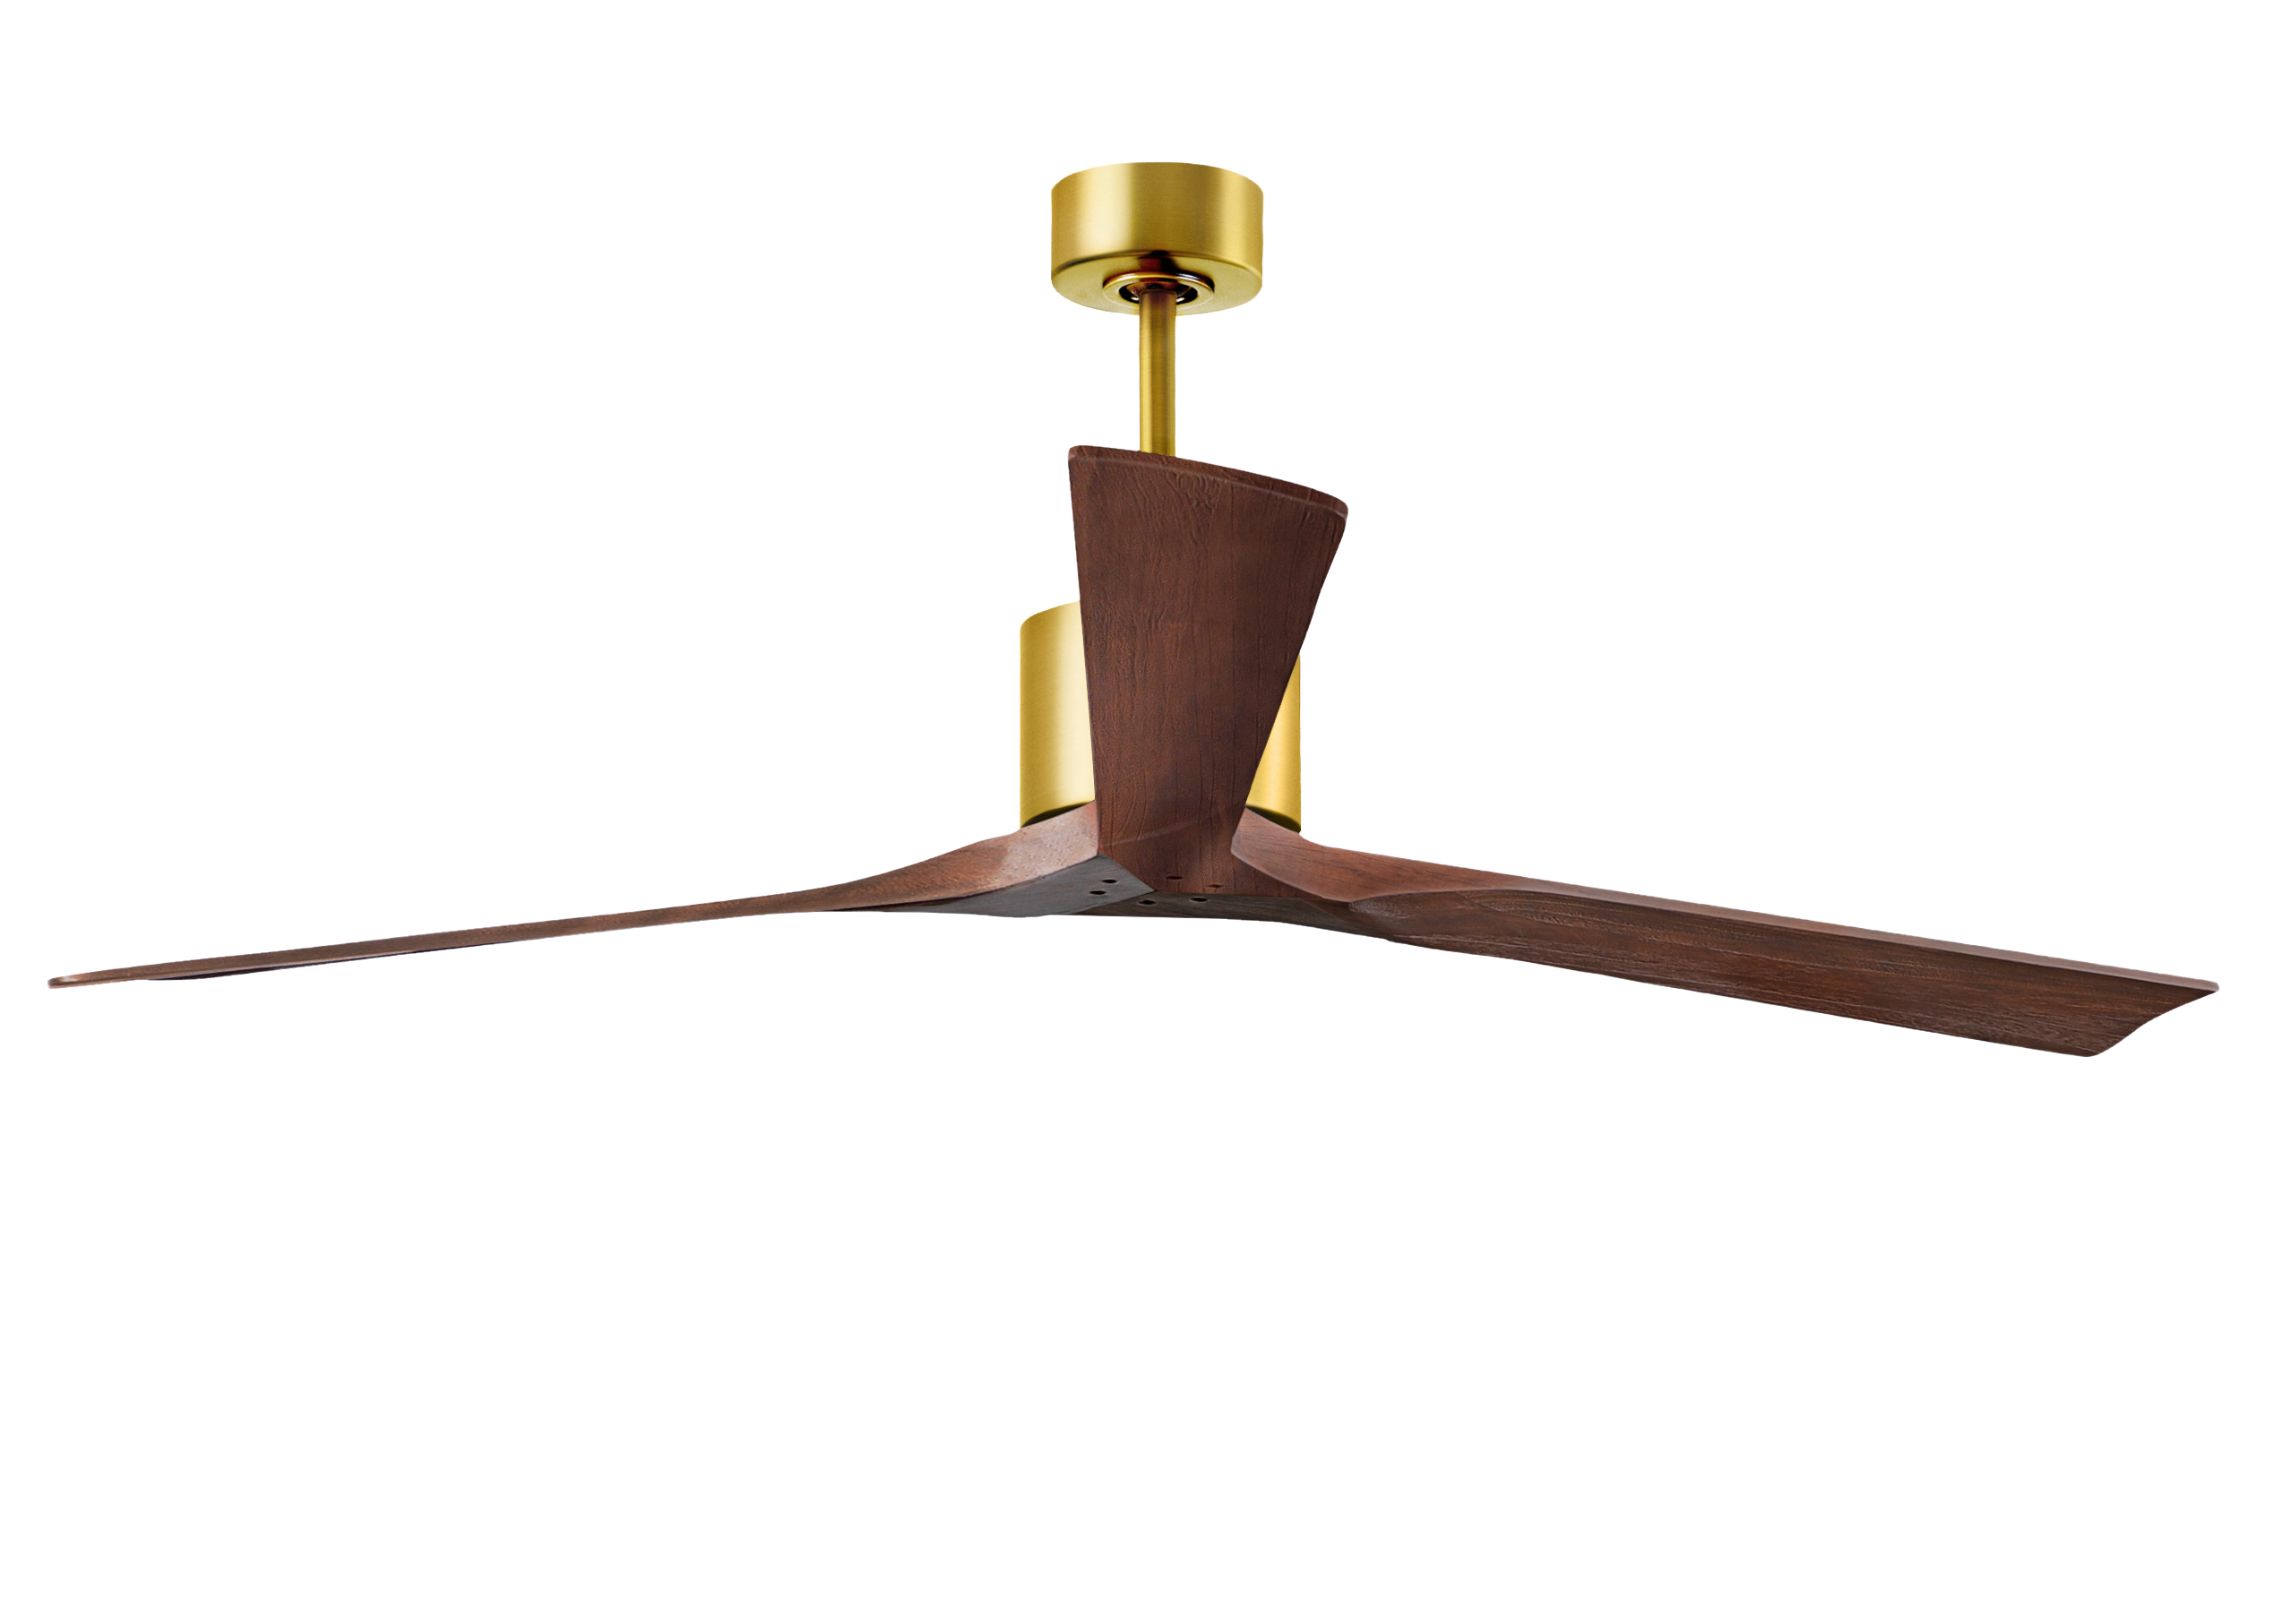 Nan XL Ceiling Fan in Brushed Brass with 72” Walnut Blades